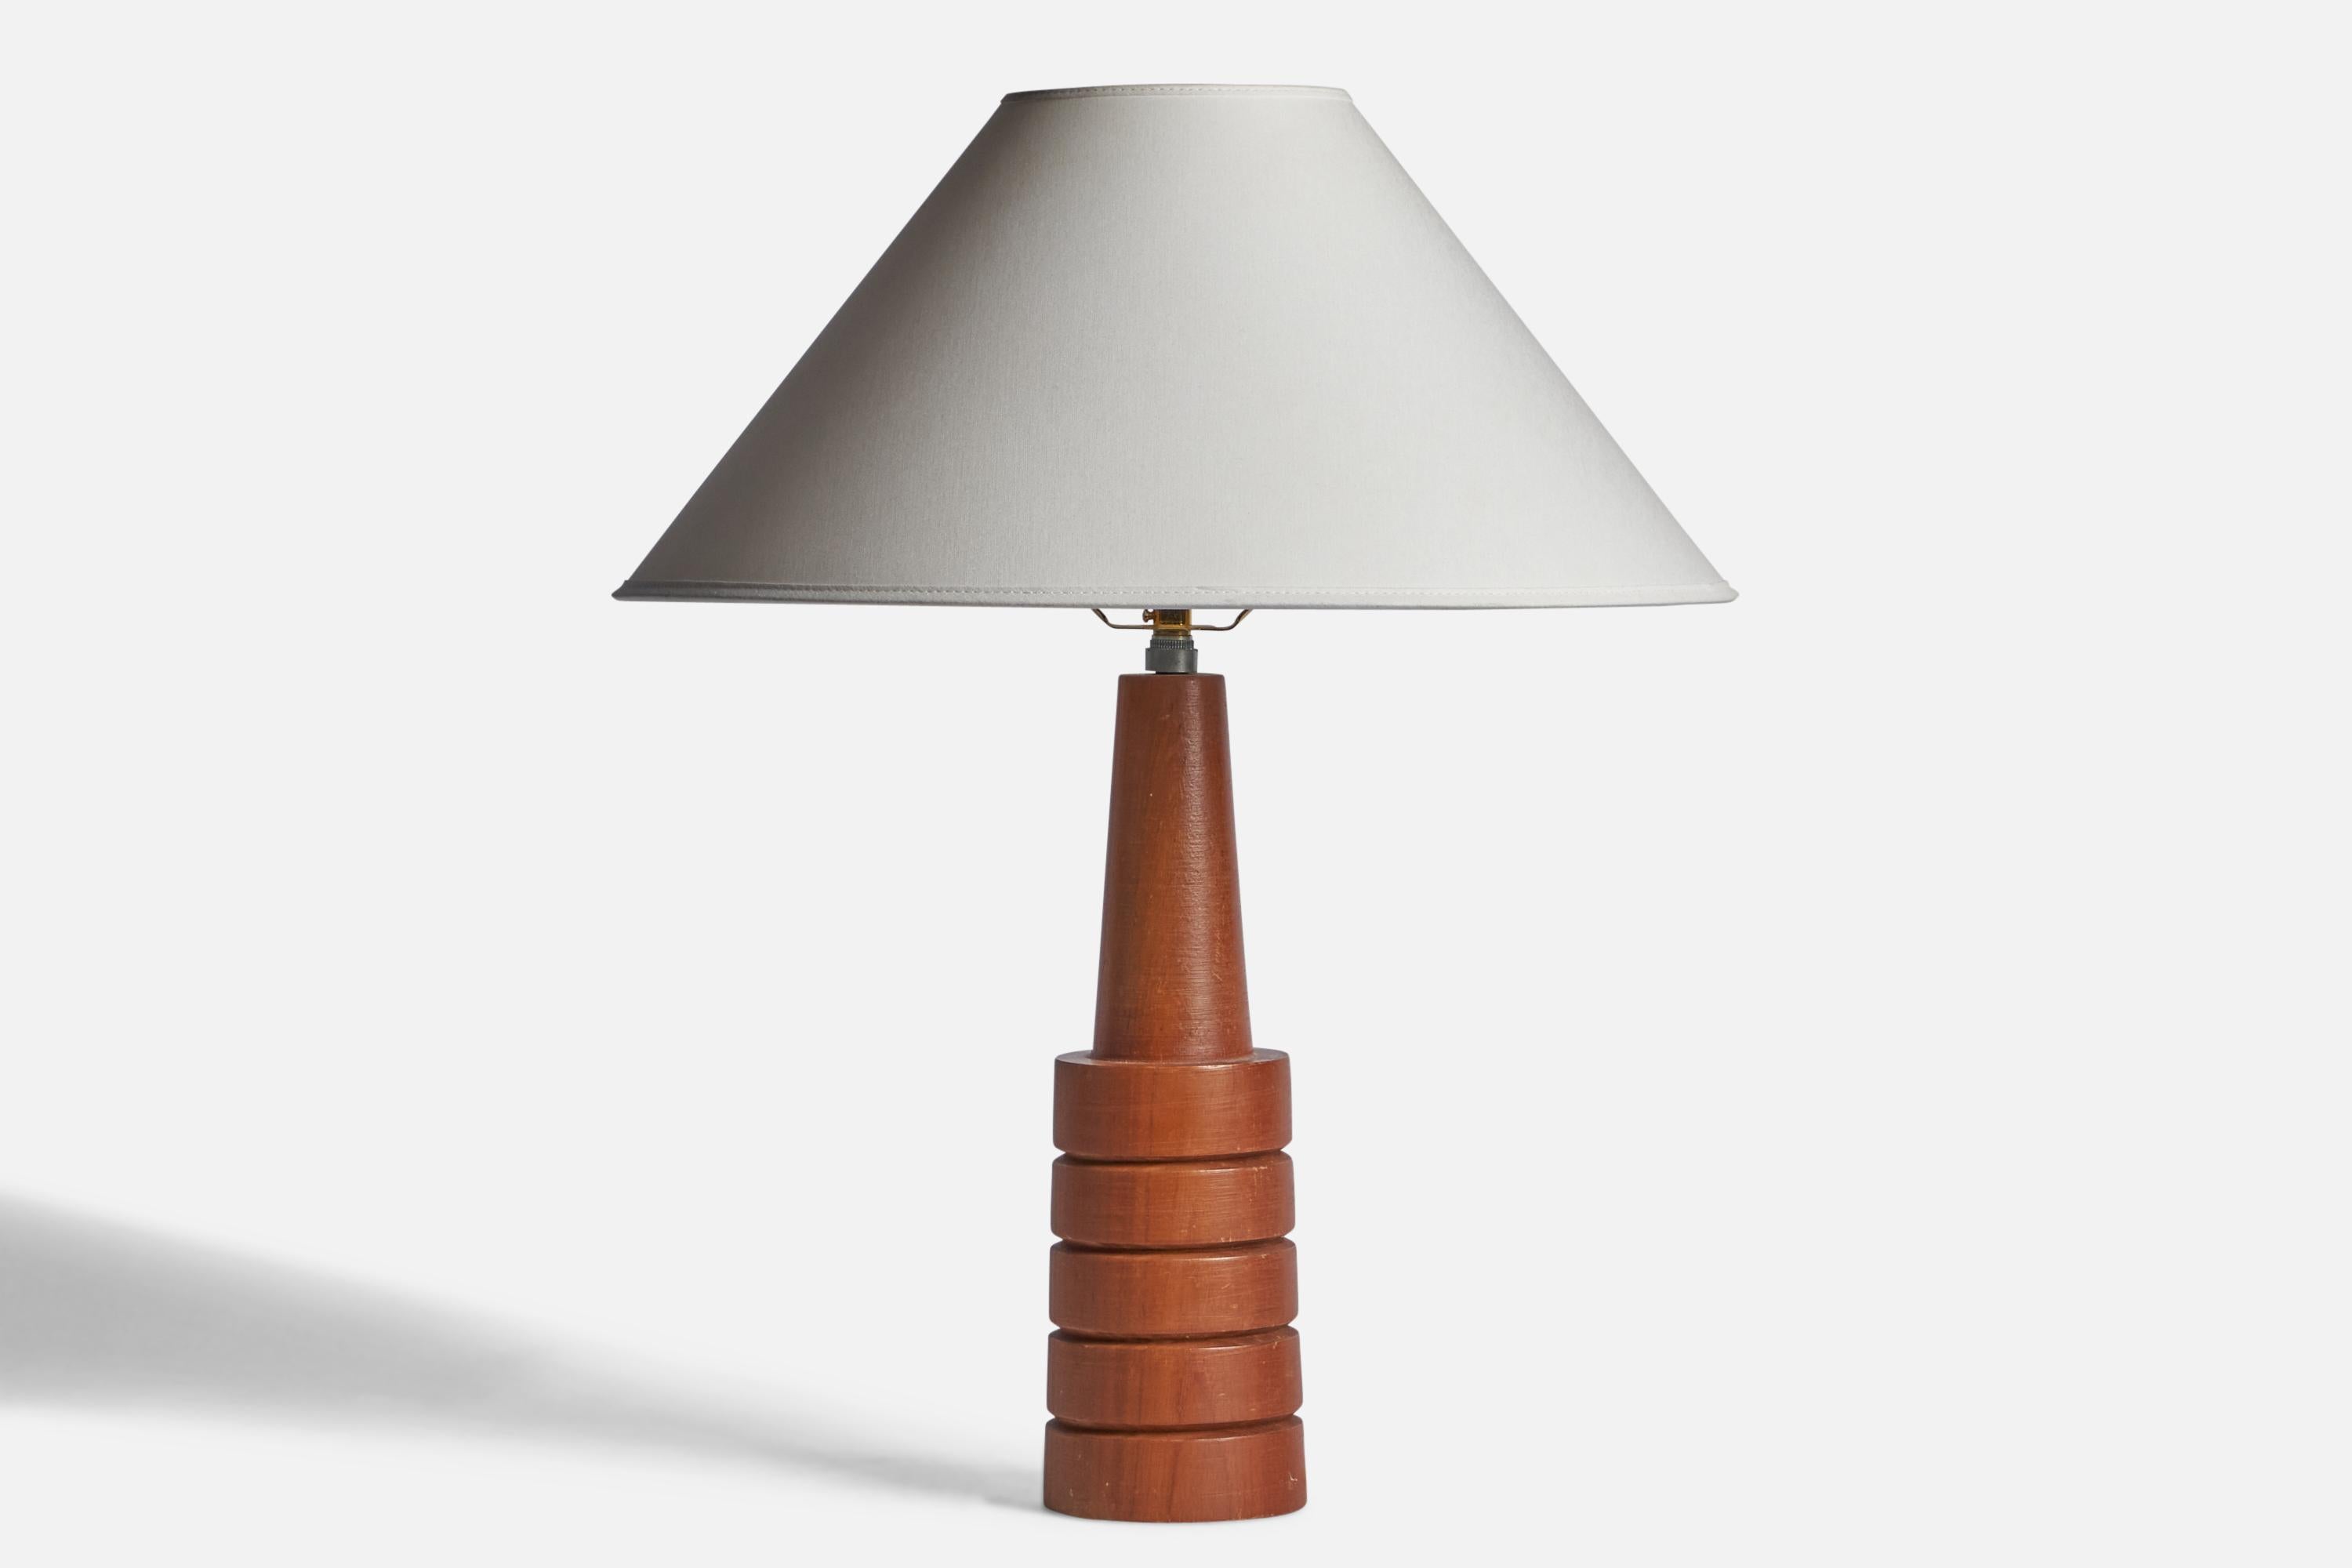 Lampe de table en teck conçue et produite aux États-Unis, c. années 1960.

Dimensions de la lampe (pouces) : 15.25